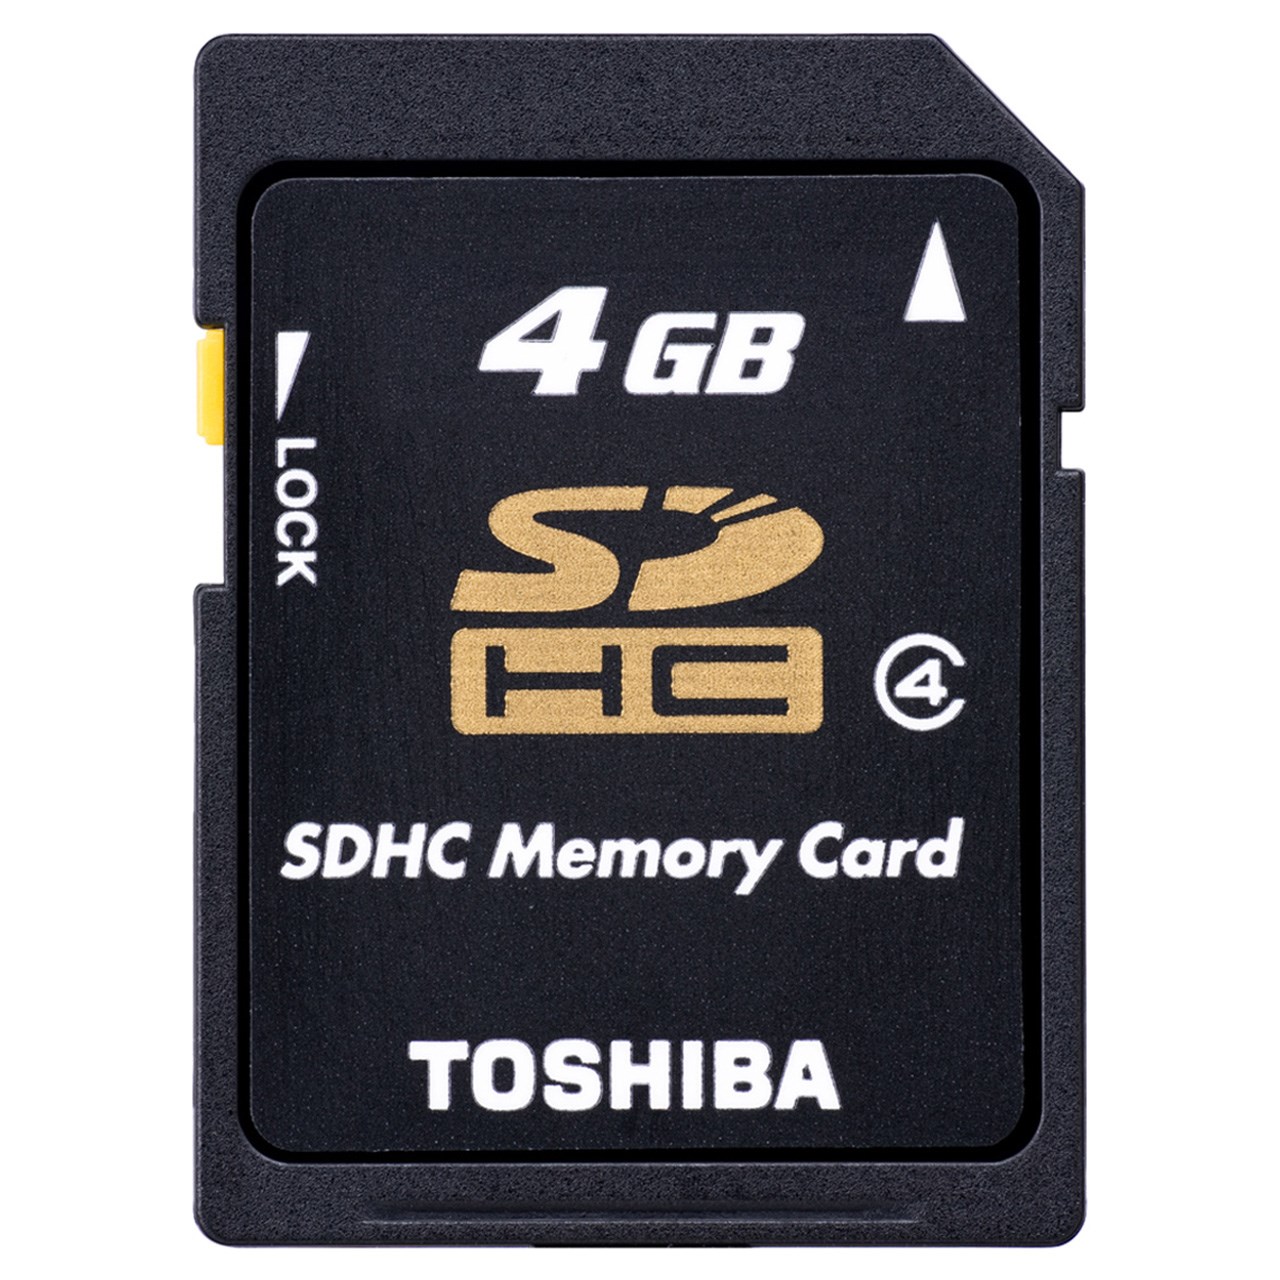 کارت حافظه SD Card توشیبا 4GB